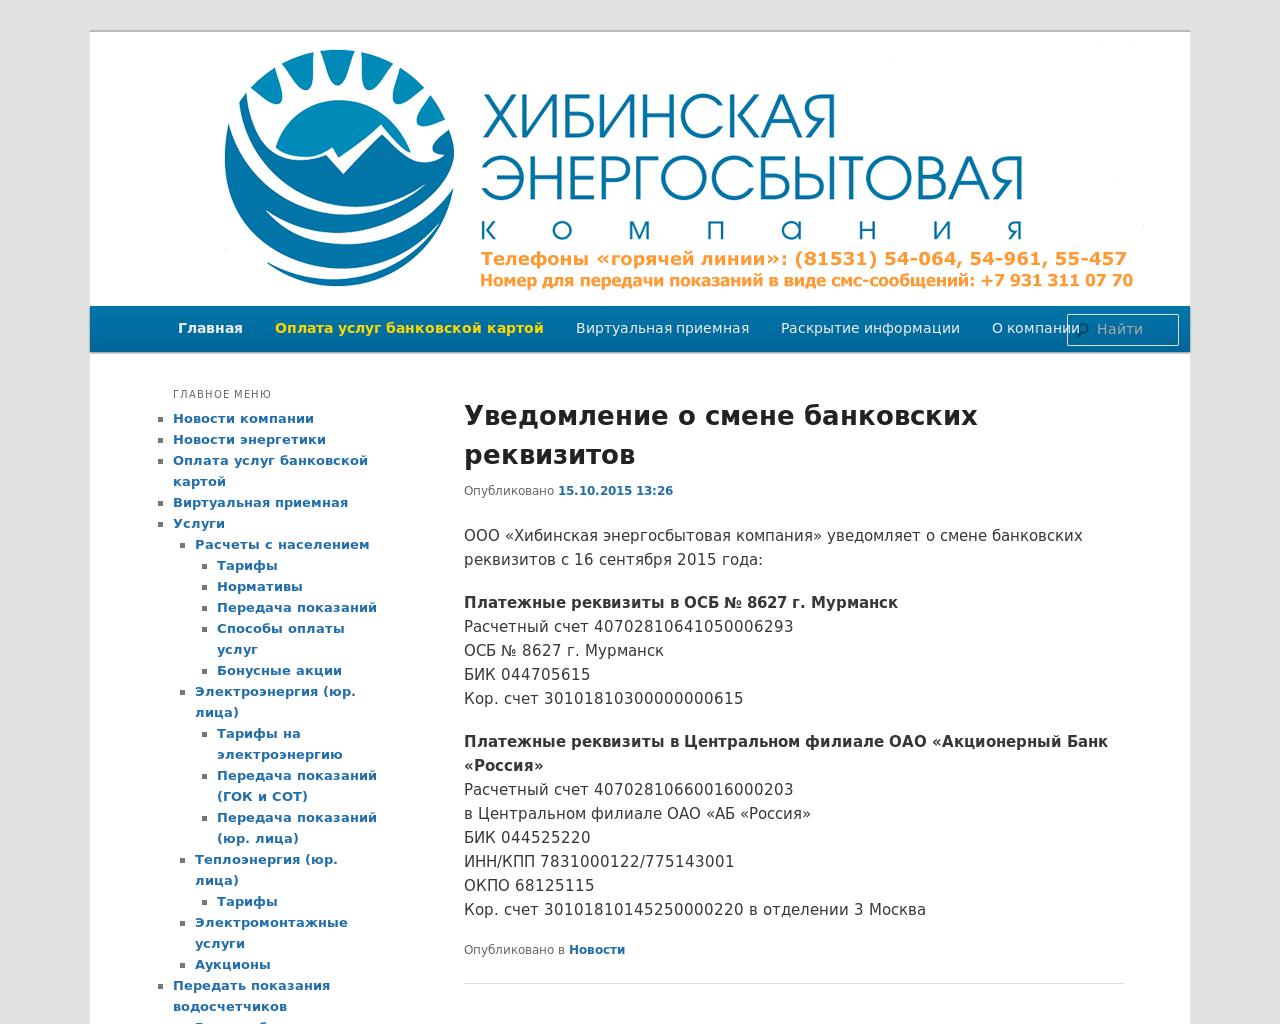 Изображение сайта hesc.ru в разрешении 1280x1024